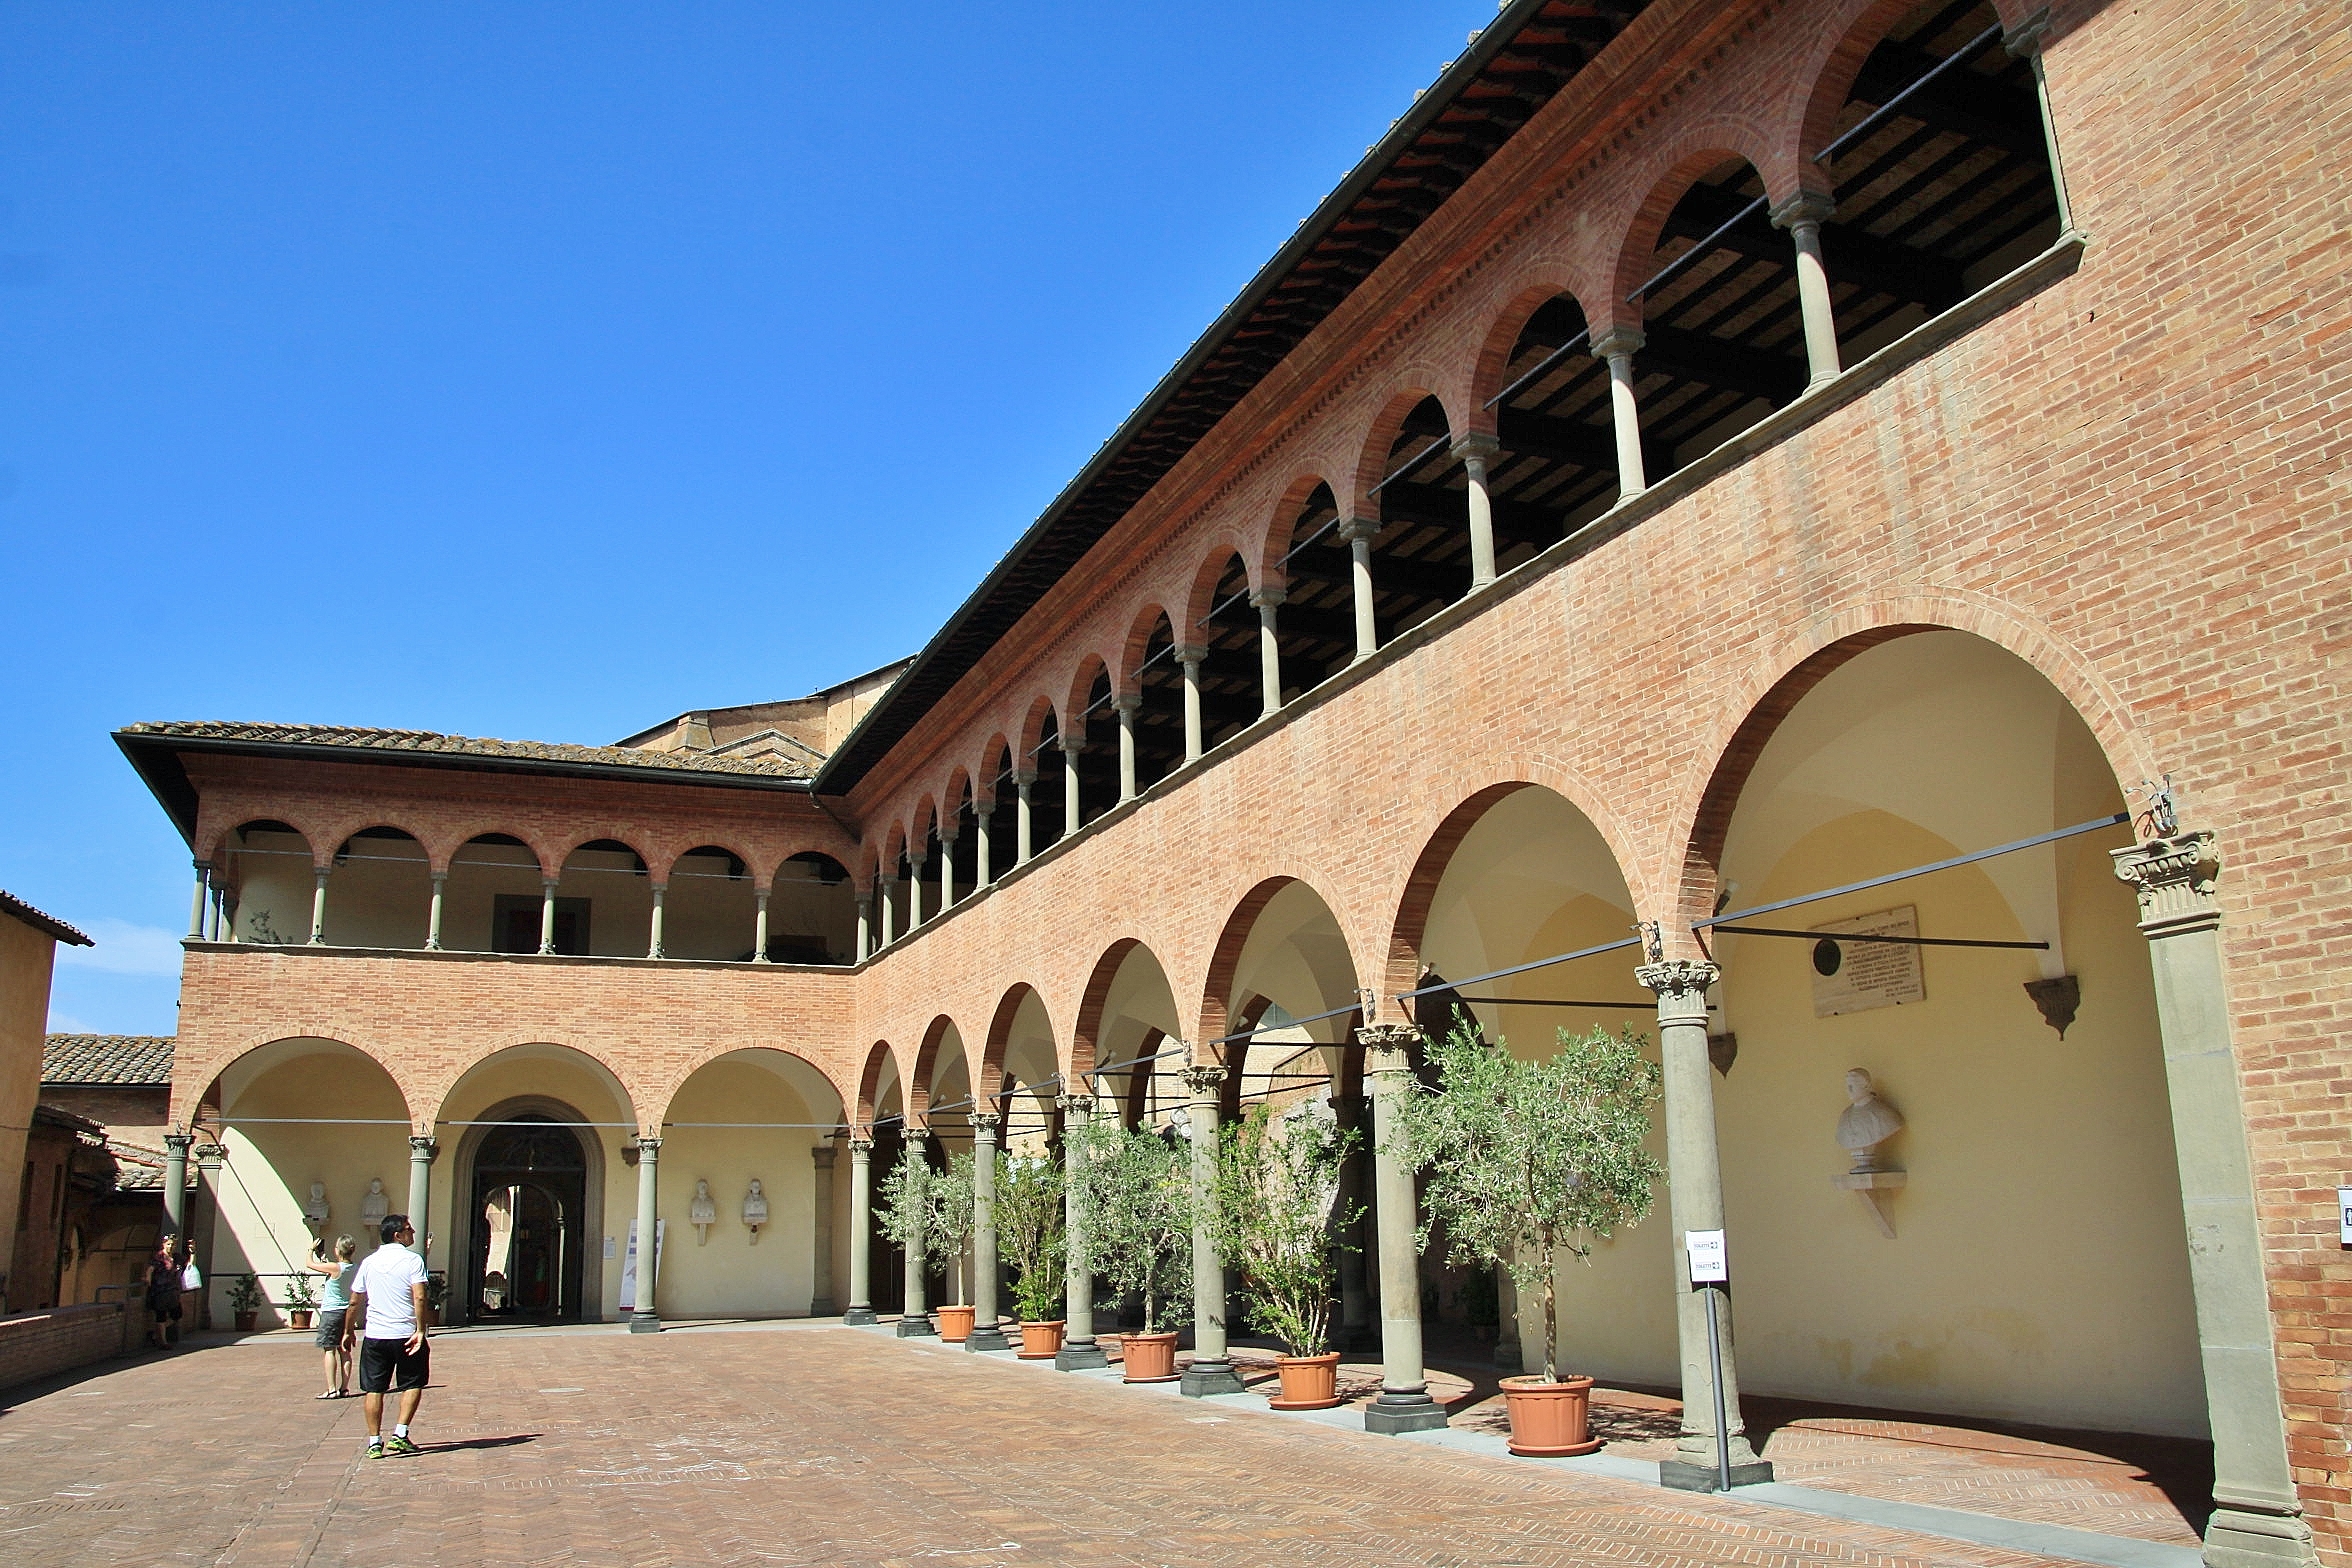 Foto: Casa de Santa Caterina - Siena (Tuscany), Italia